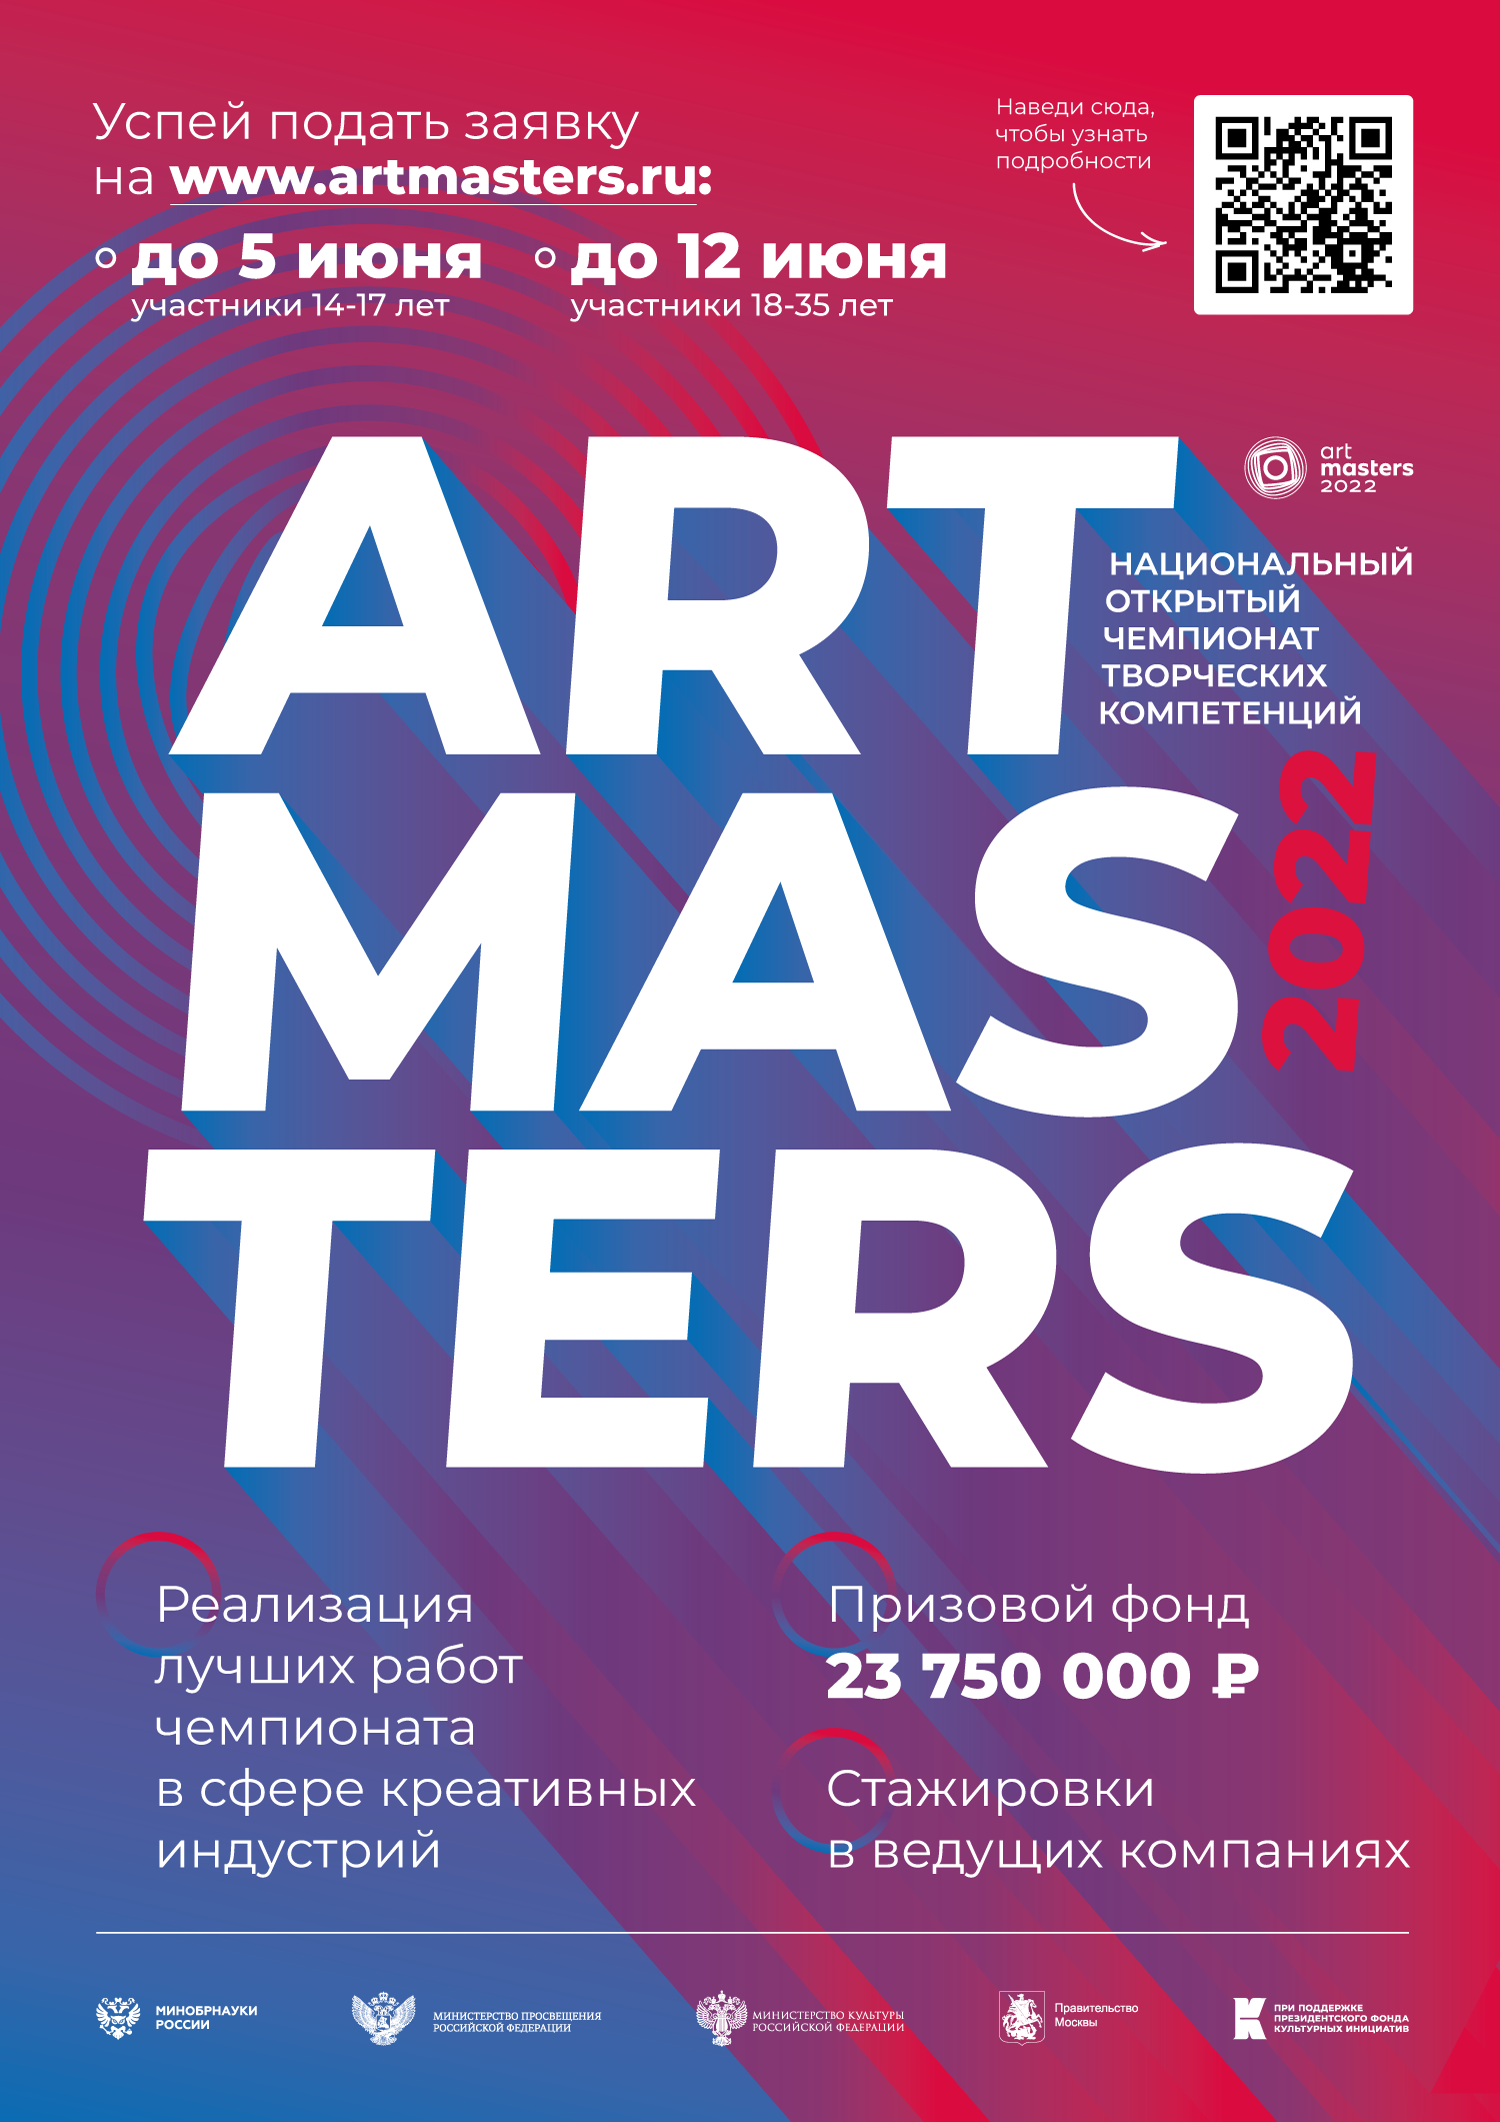 Национальный открытый чемпионат творческих компетенций. Чемпионате творческих компетенций Artmasters. Artmasters.